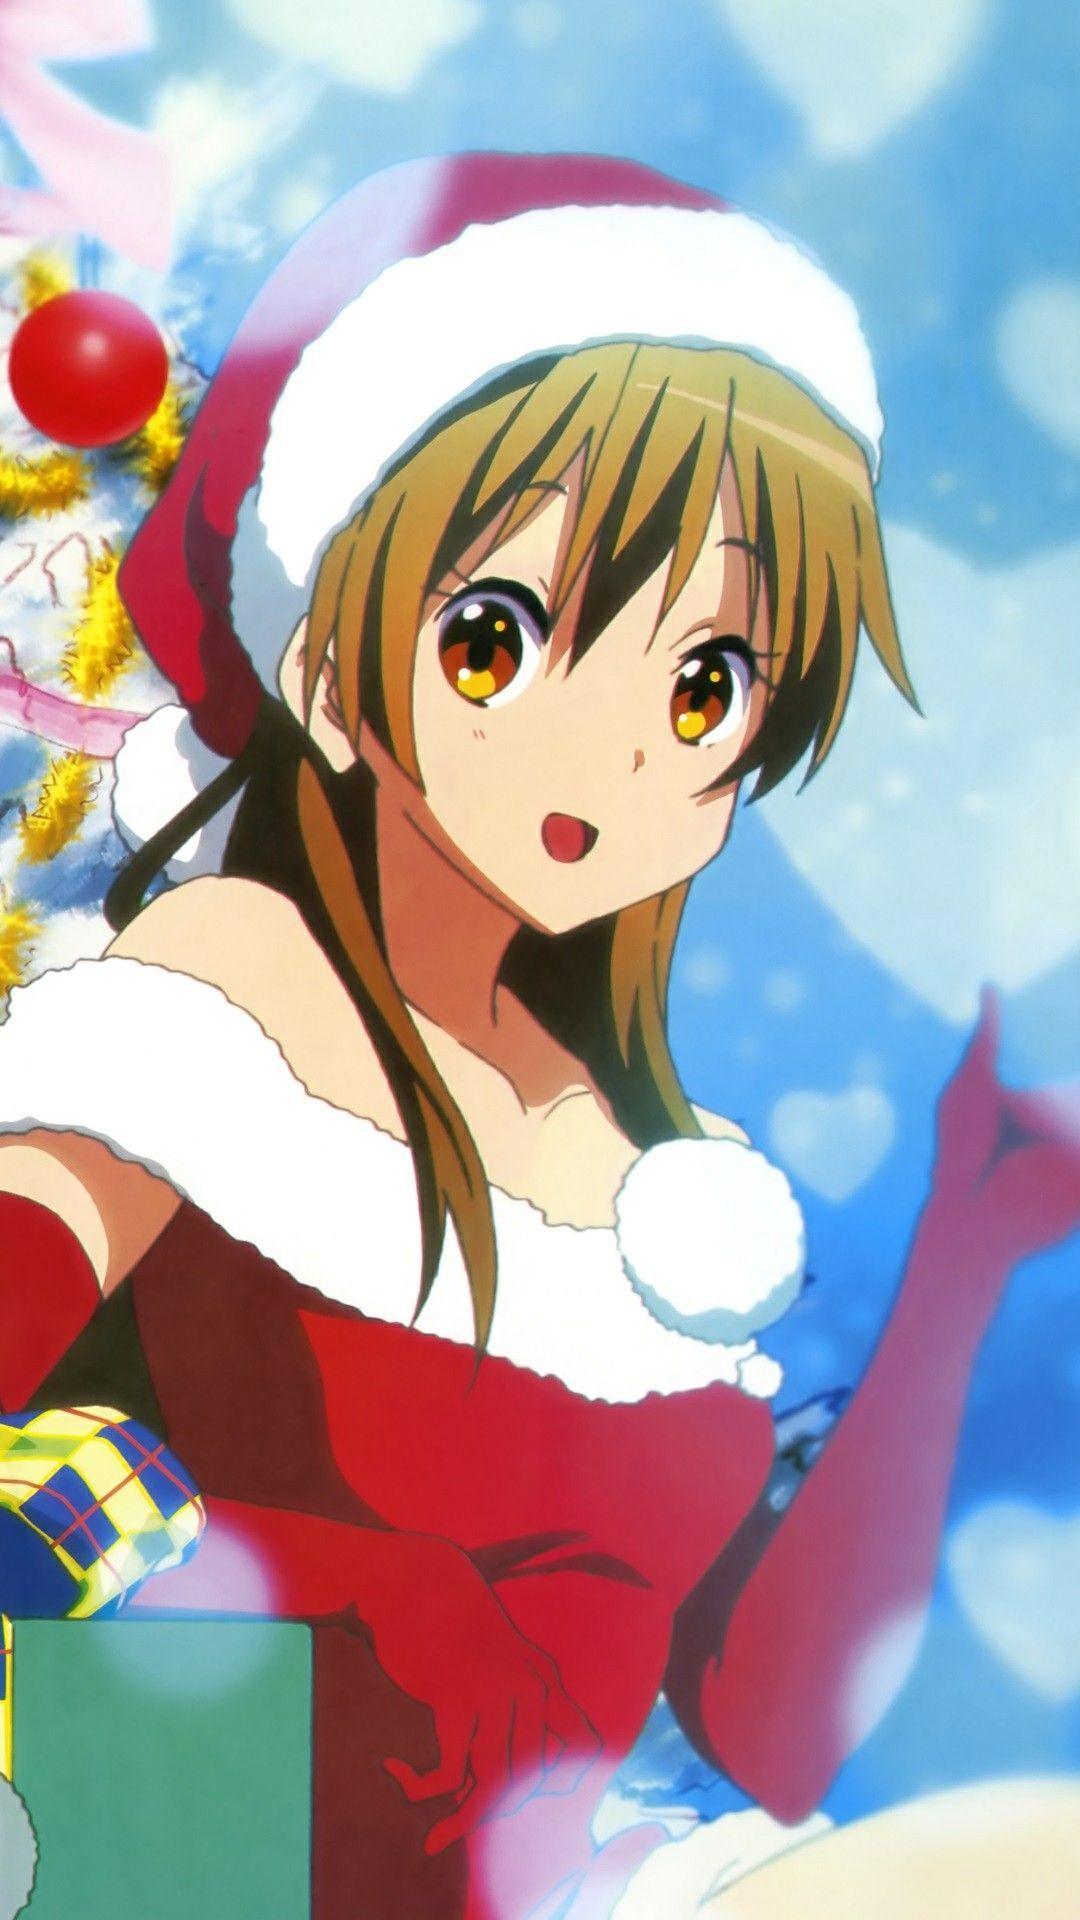 Anime Christmas Phone Wallpaper Free Anime Christmas